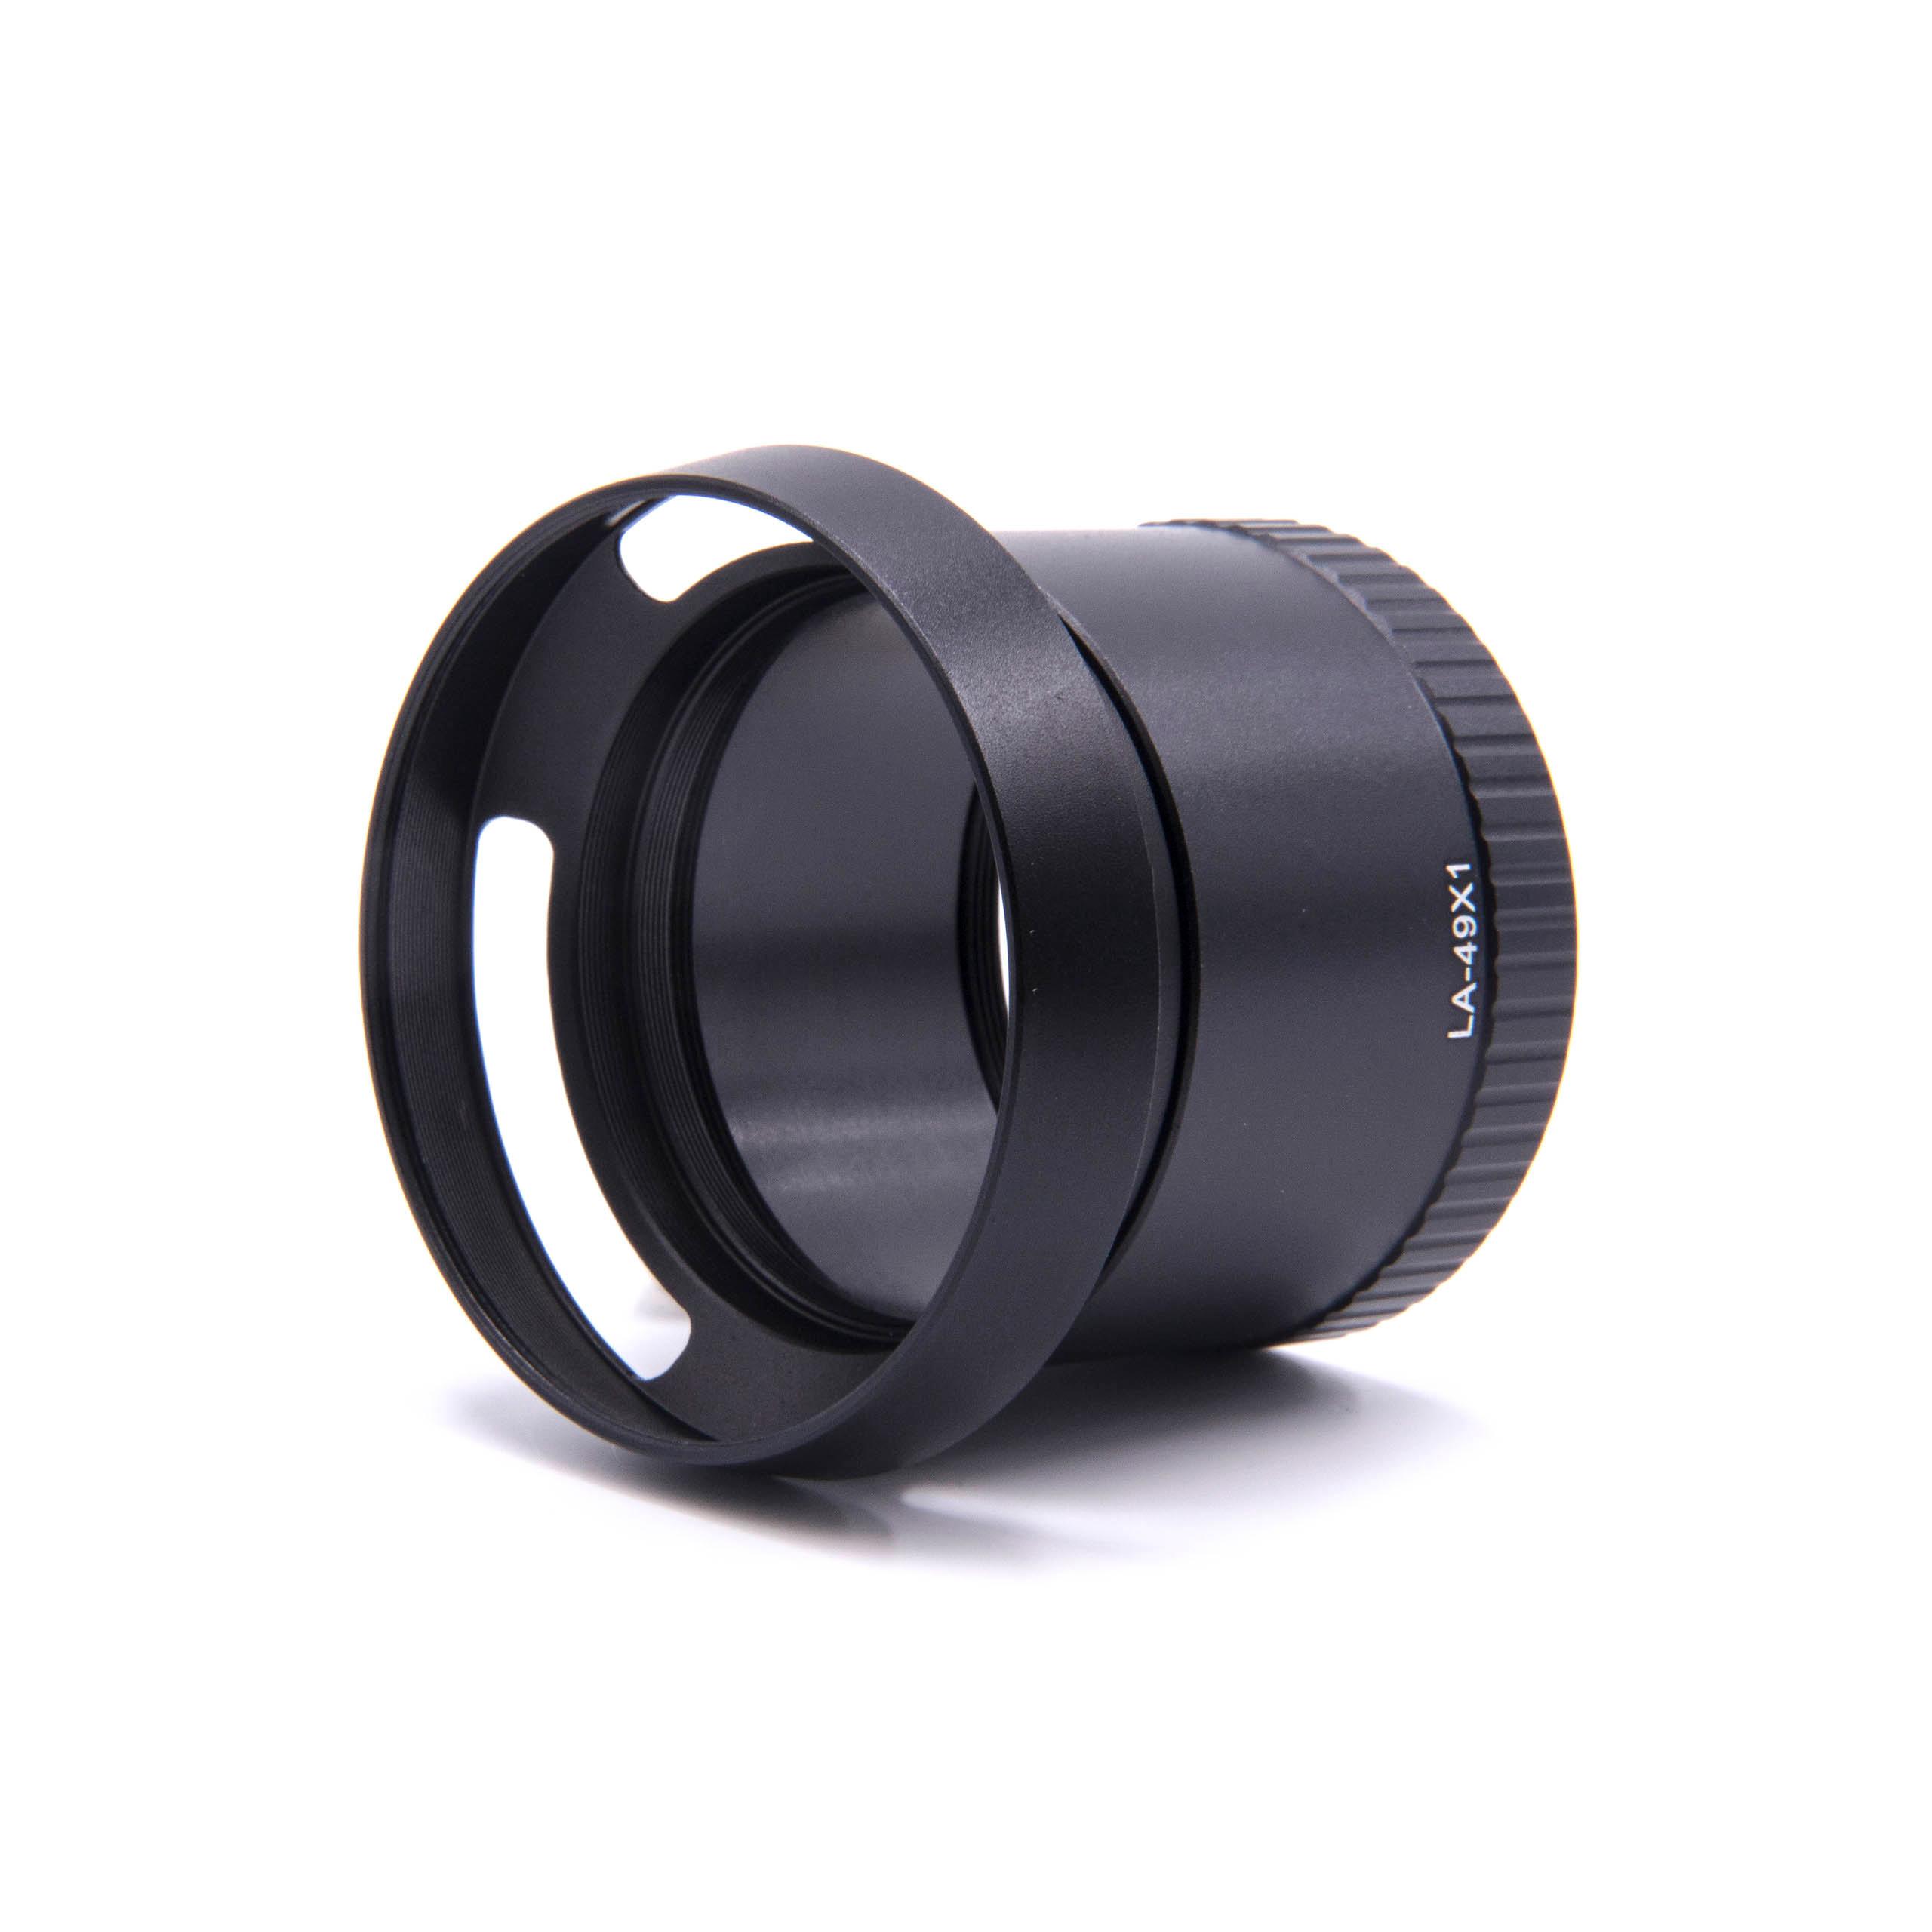 Redukcja filtrowa 49 mm w formie tulei do obiektywu aparatu Leica X1, X2 